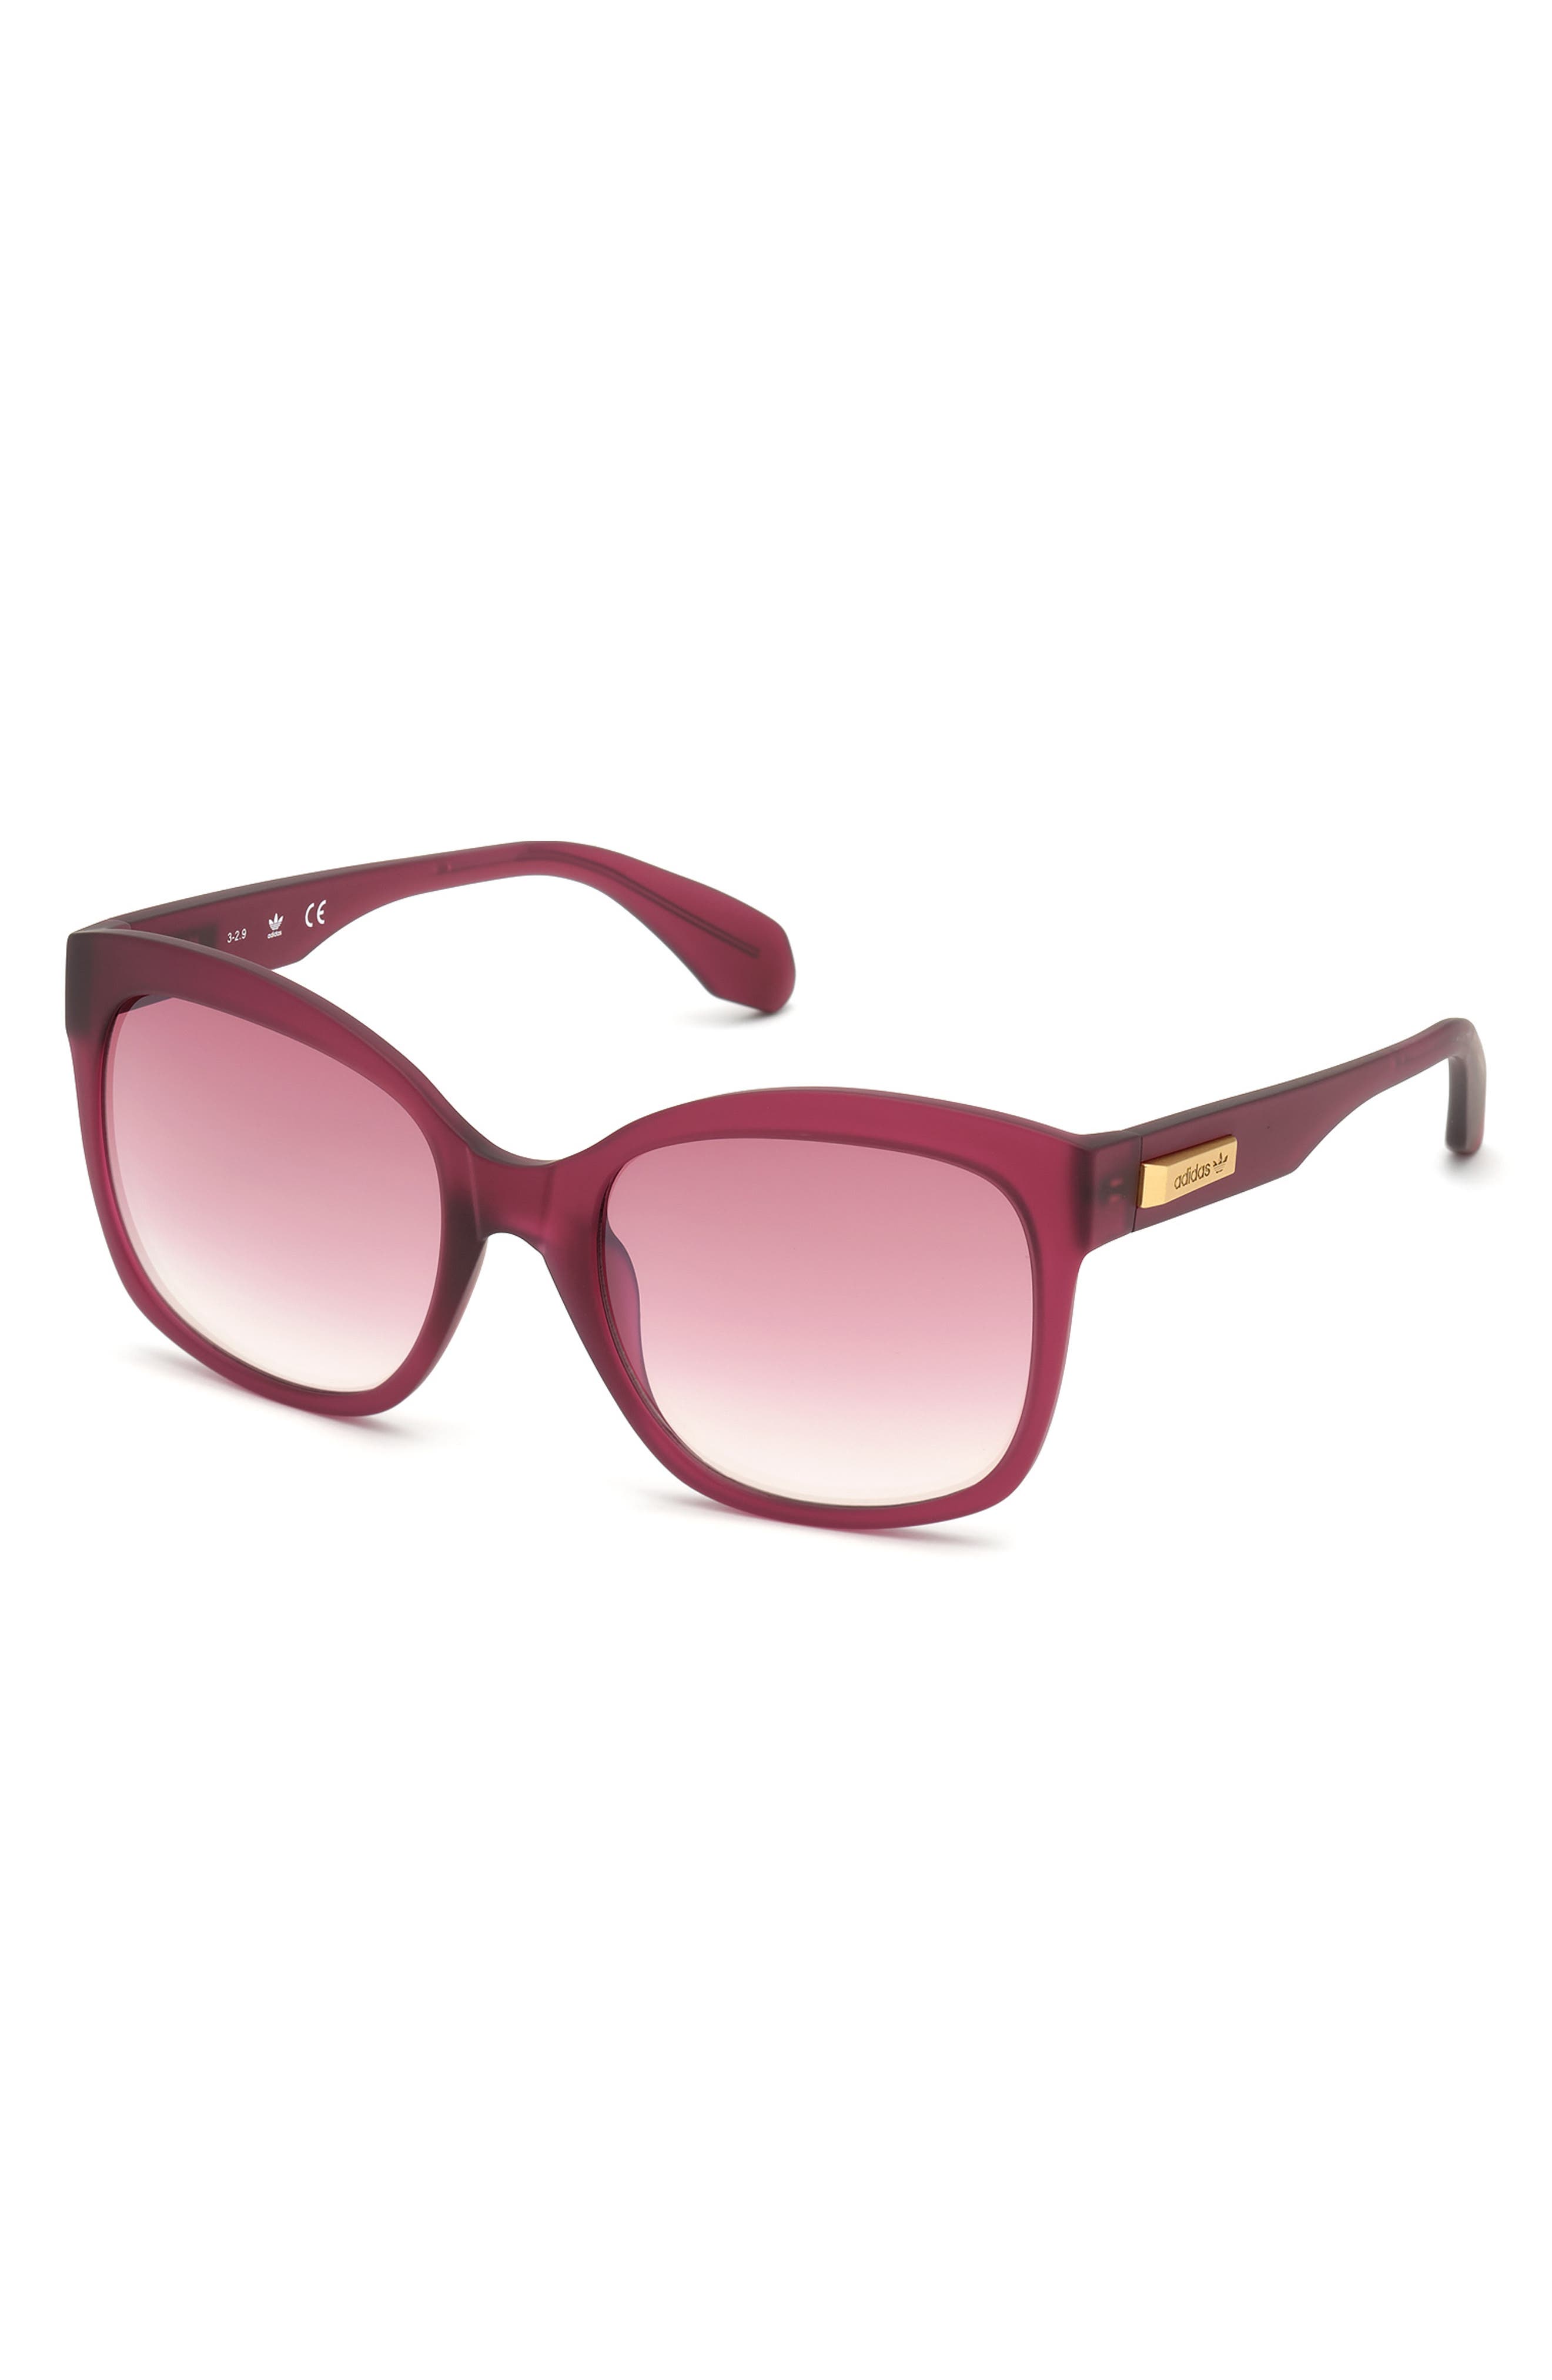 adidas sunglasses pink